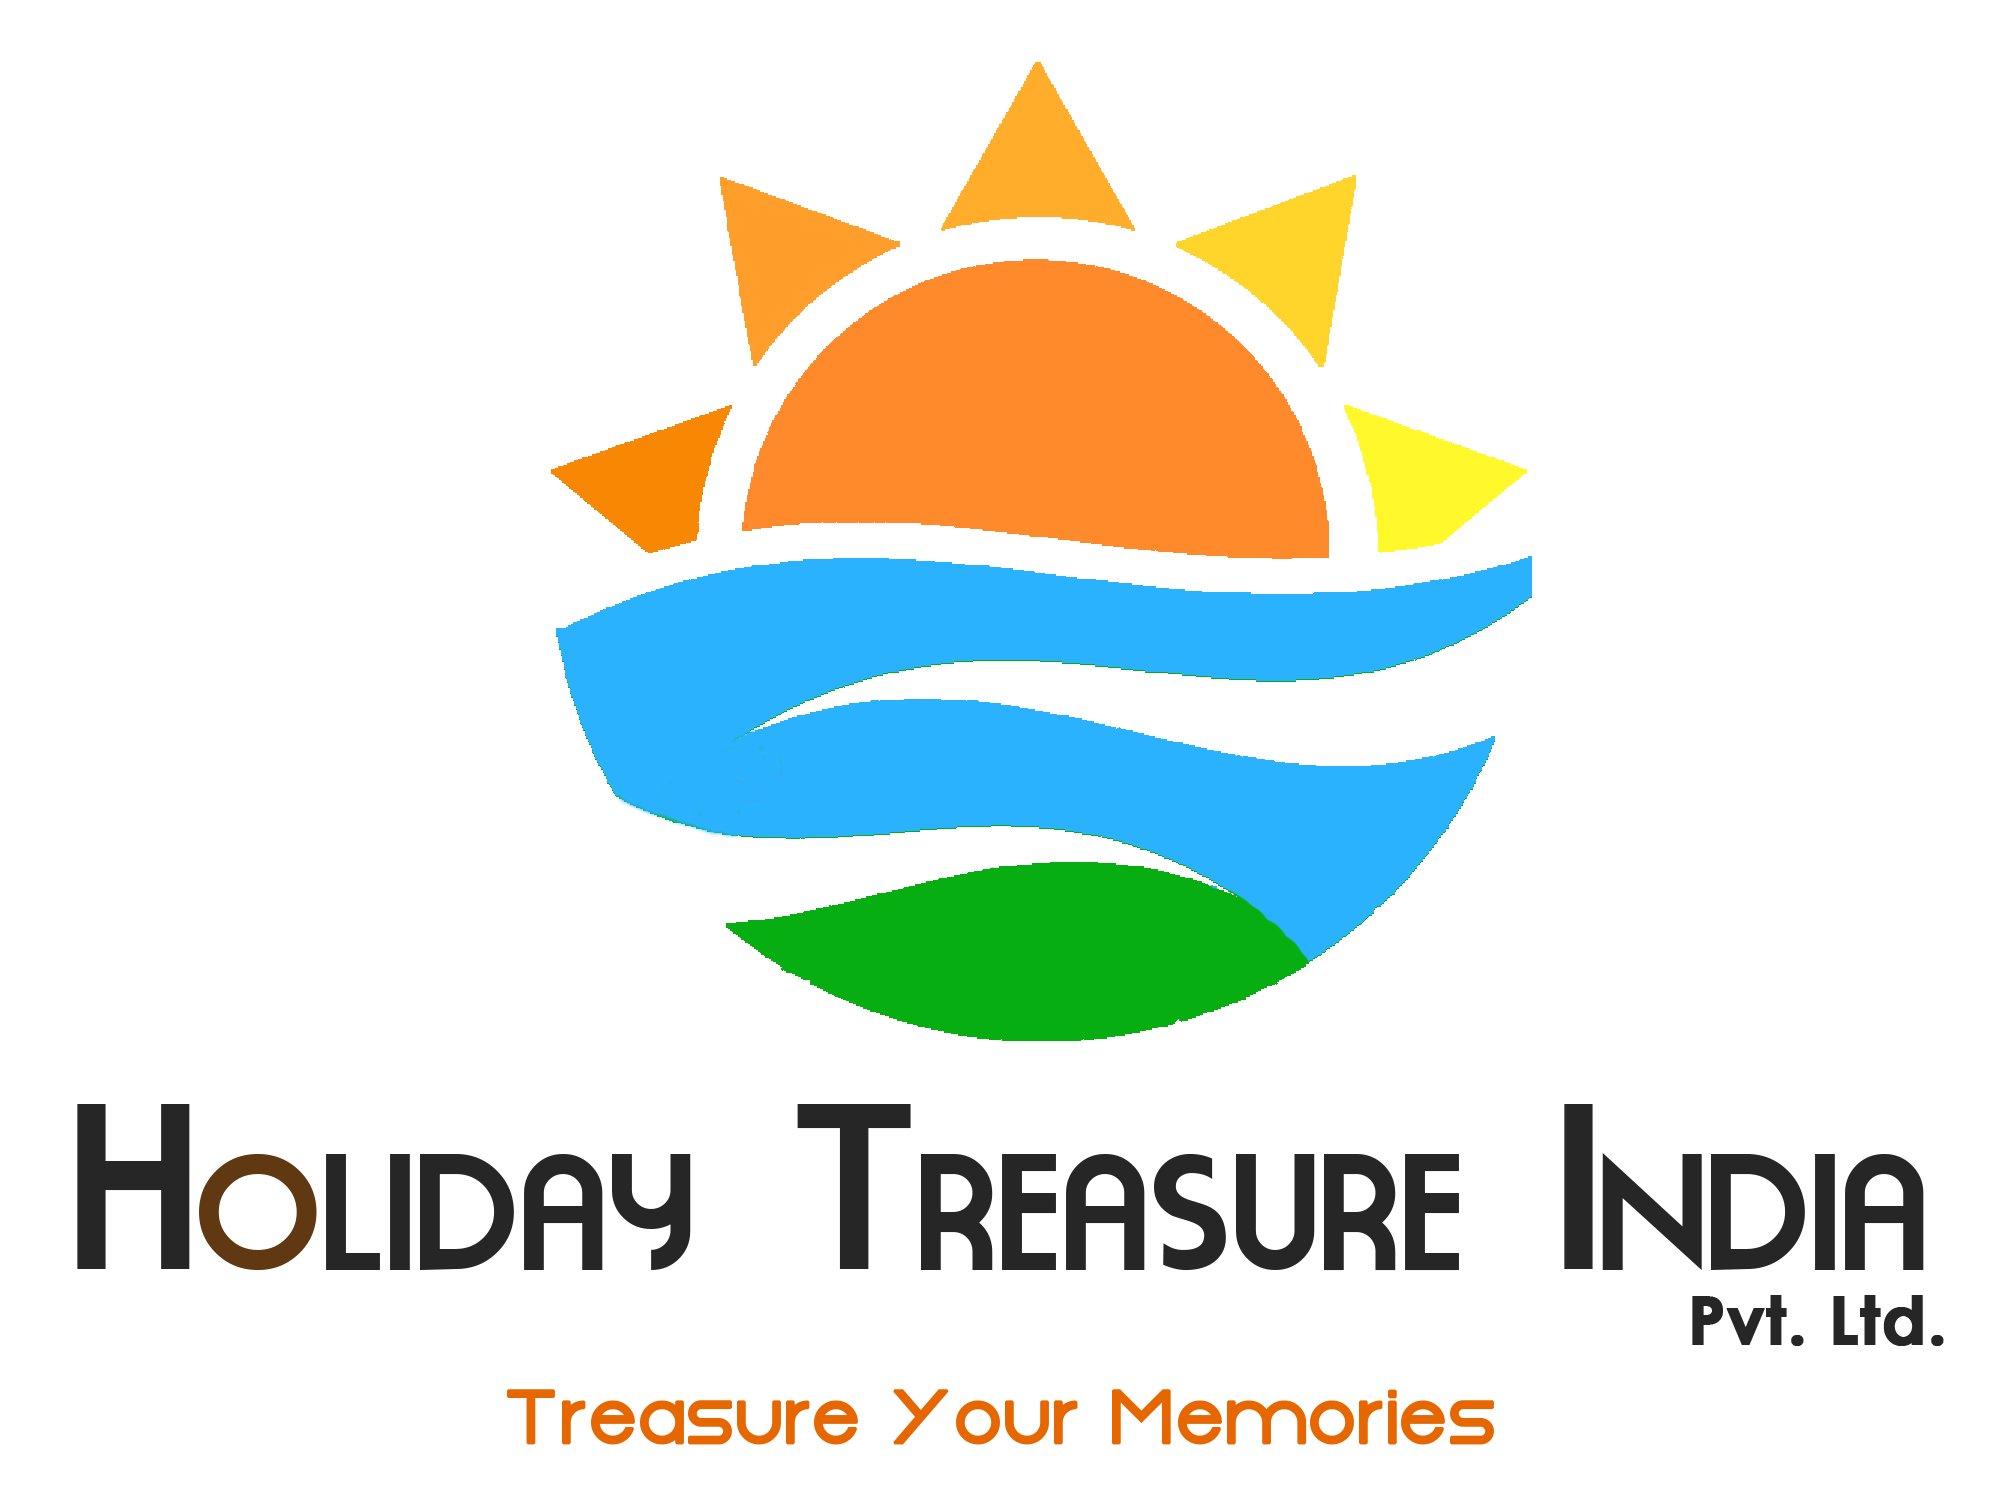 holiday treasure india - logo-e10966d9